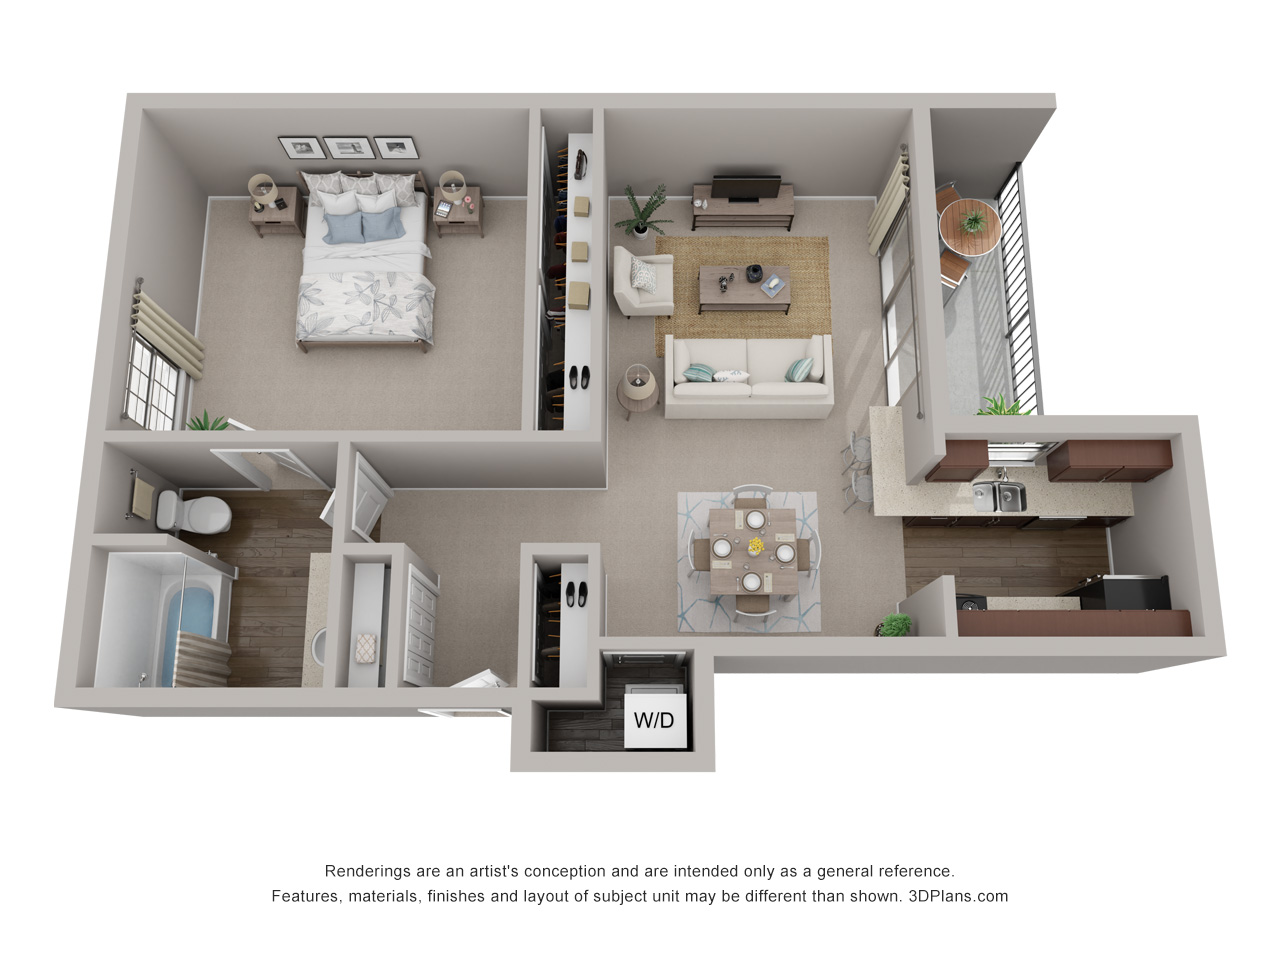 1 bedroom 1 bathroom apartment floorplan